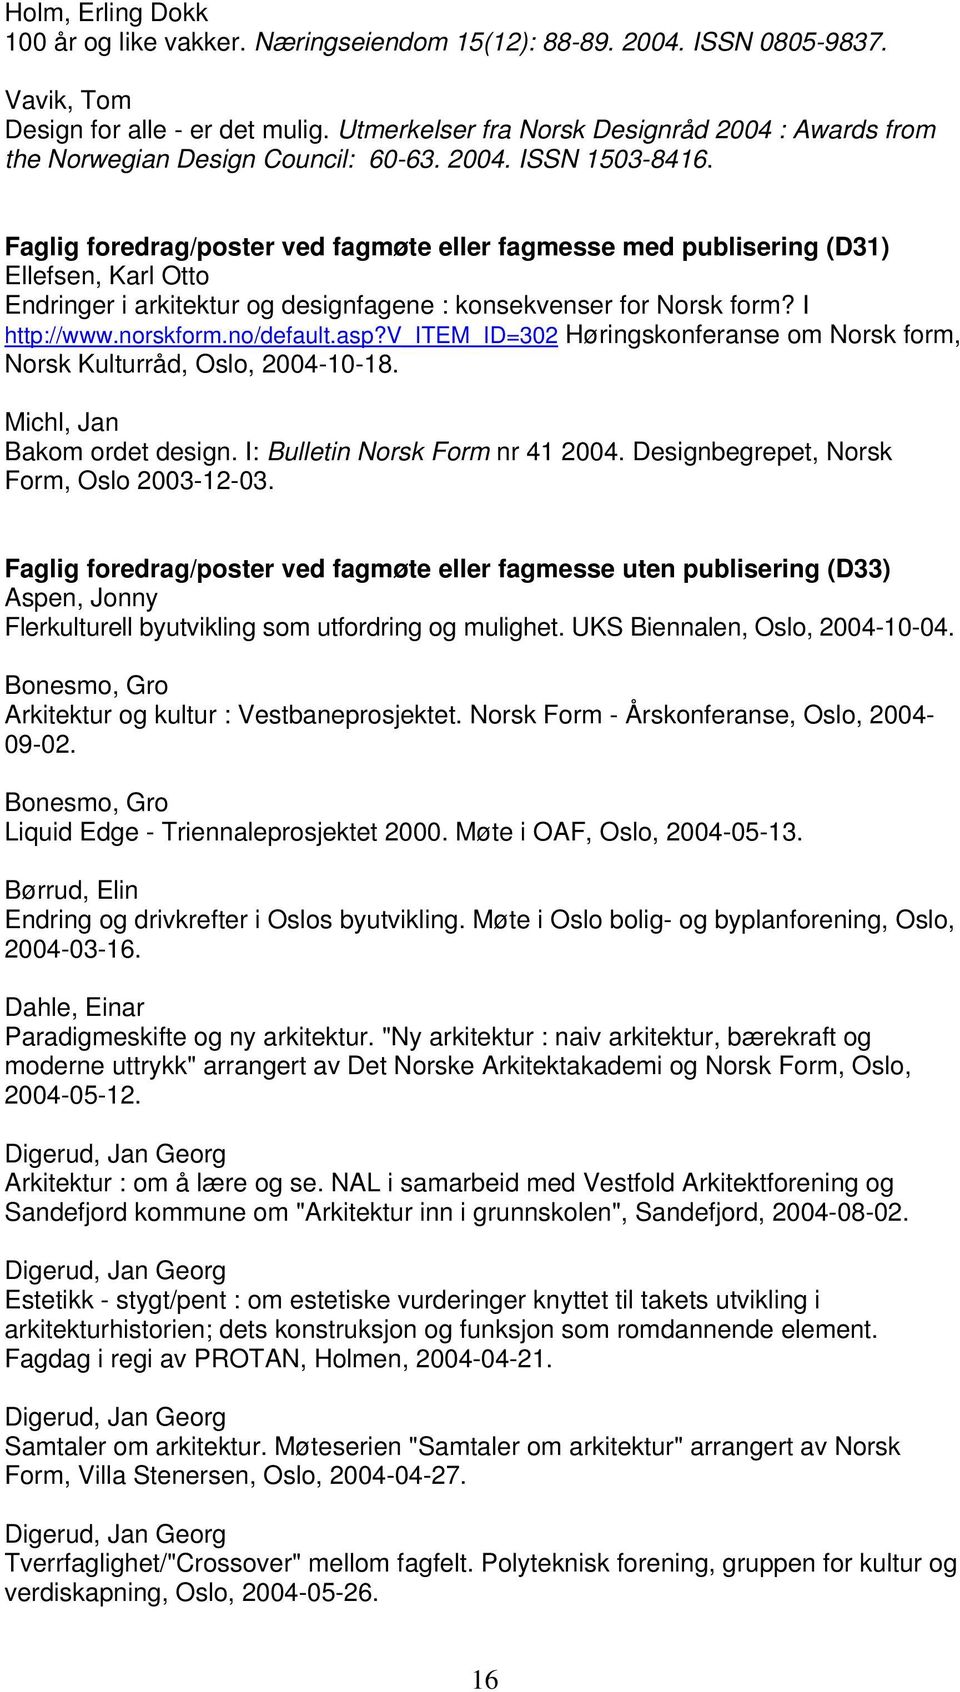 Faglig foredrag/poster ved fagmøte eller fagmesse med publisering (D31) Ellefsen, Karl Otto Endringer i arkitektur og designfagene : konsekvenser for Norsk form? I http://www.norskform.no/default.asp?